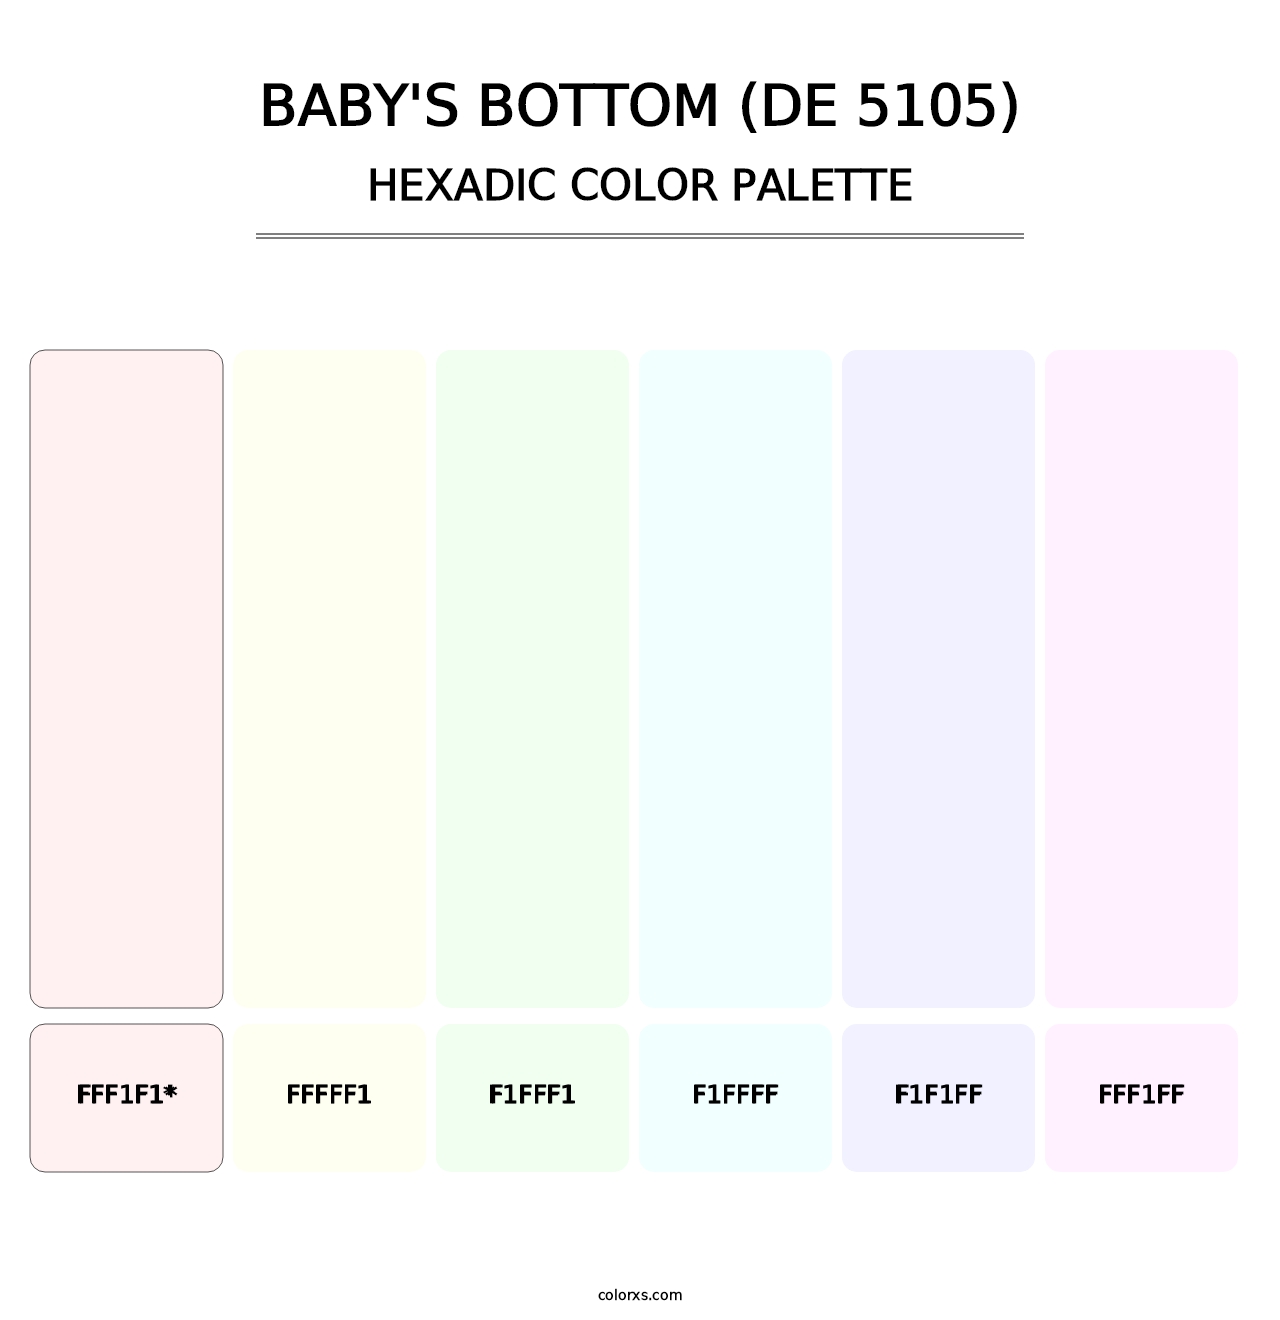 Baby's Bottom (DE 5105) - Hexadic Color Palette